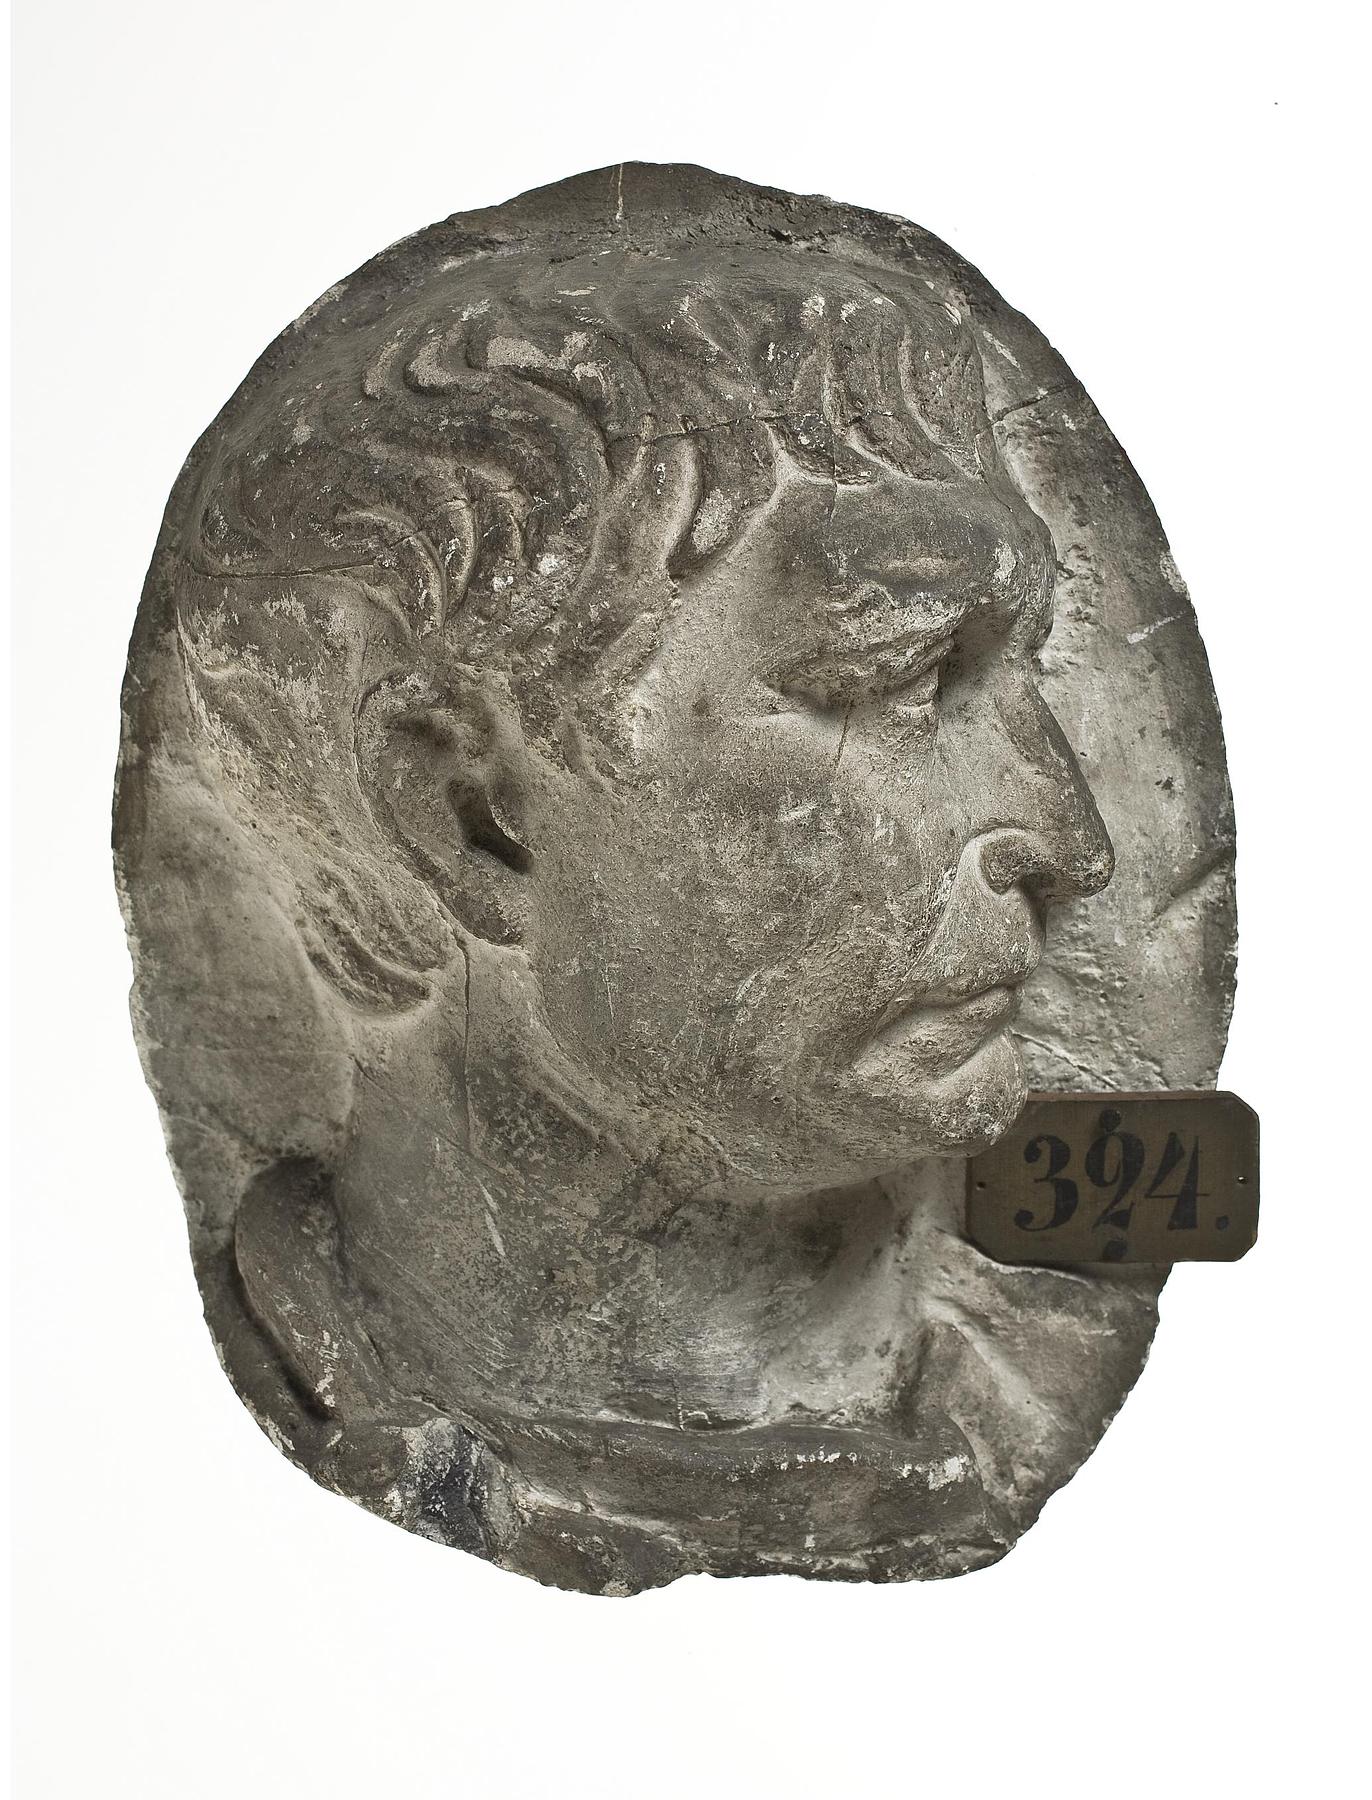 Head of Trajan, L324